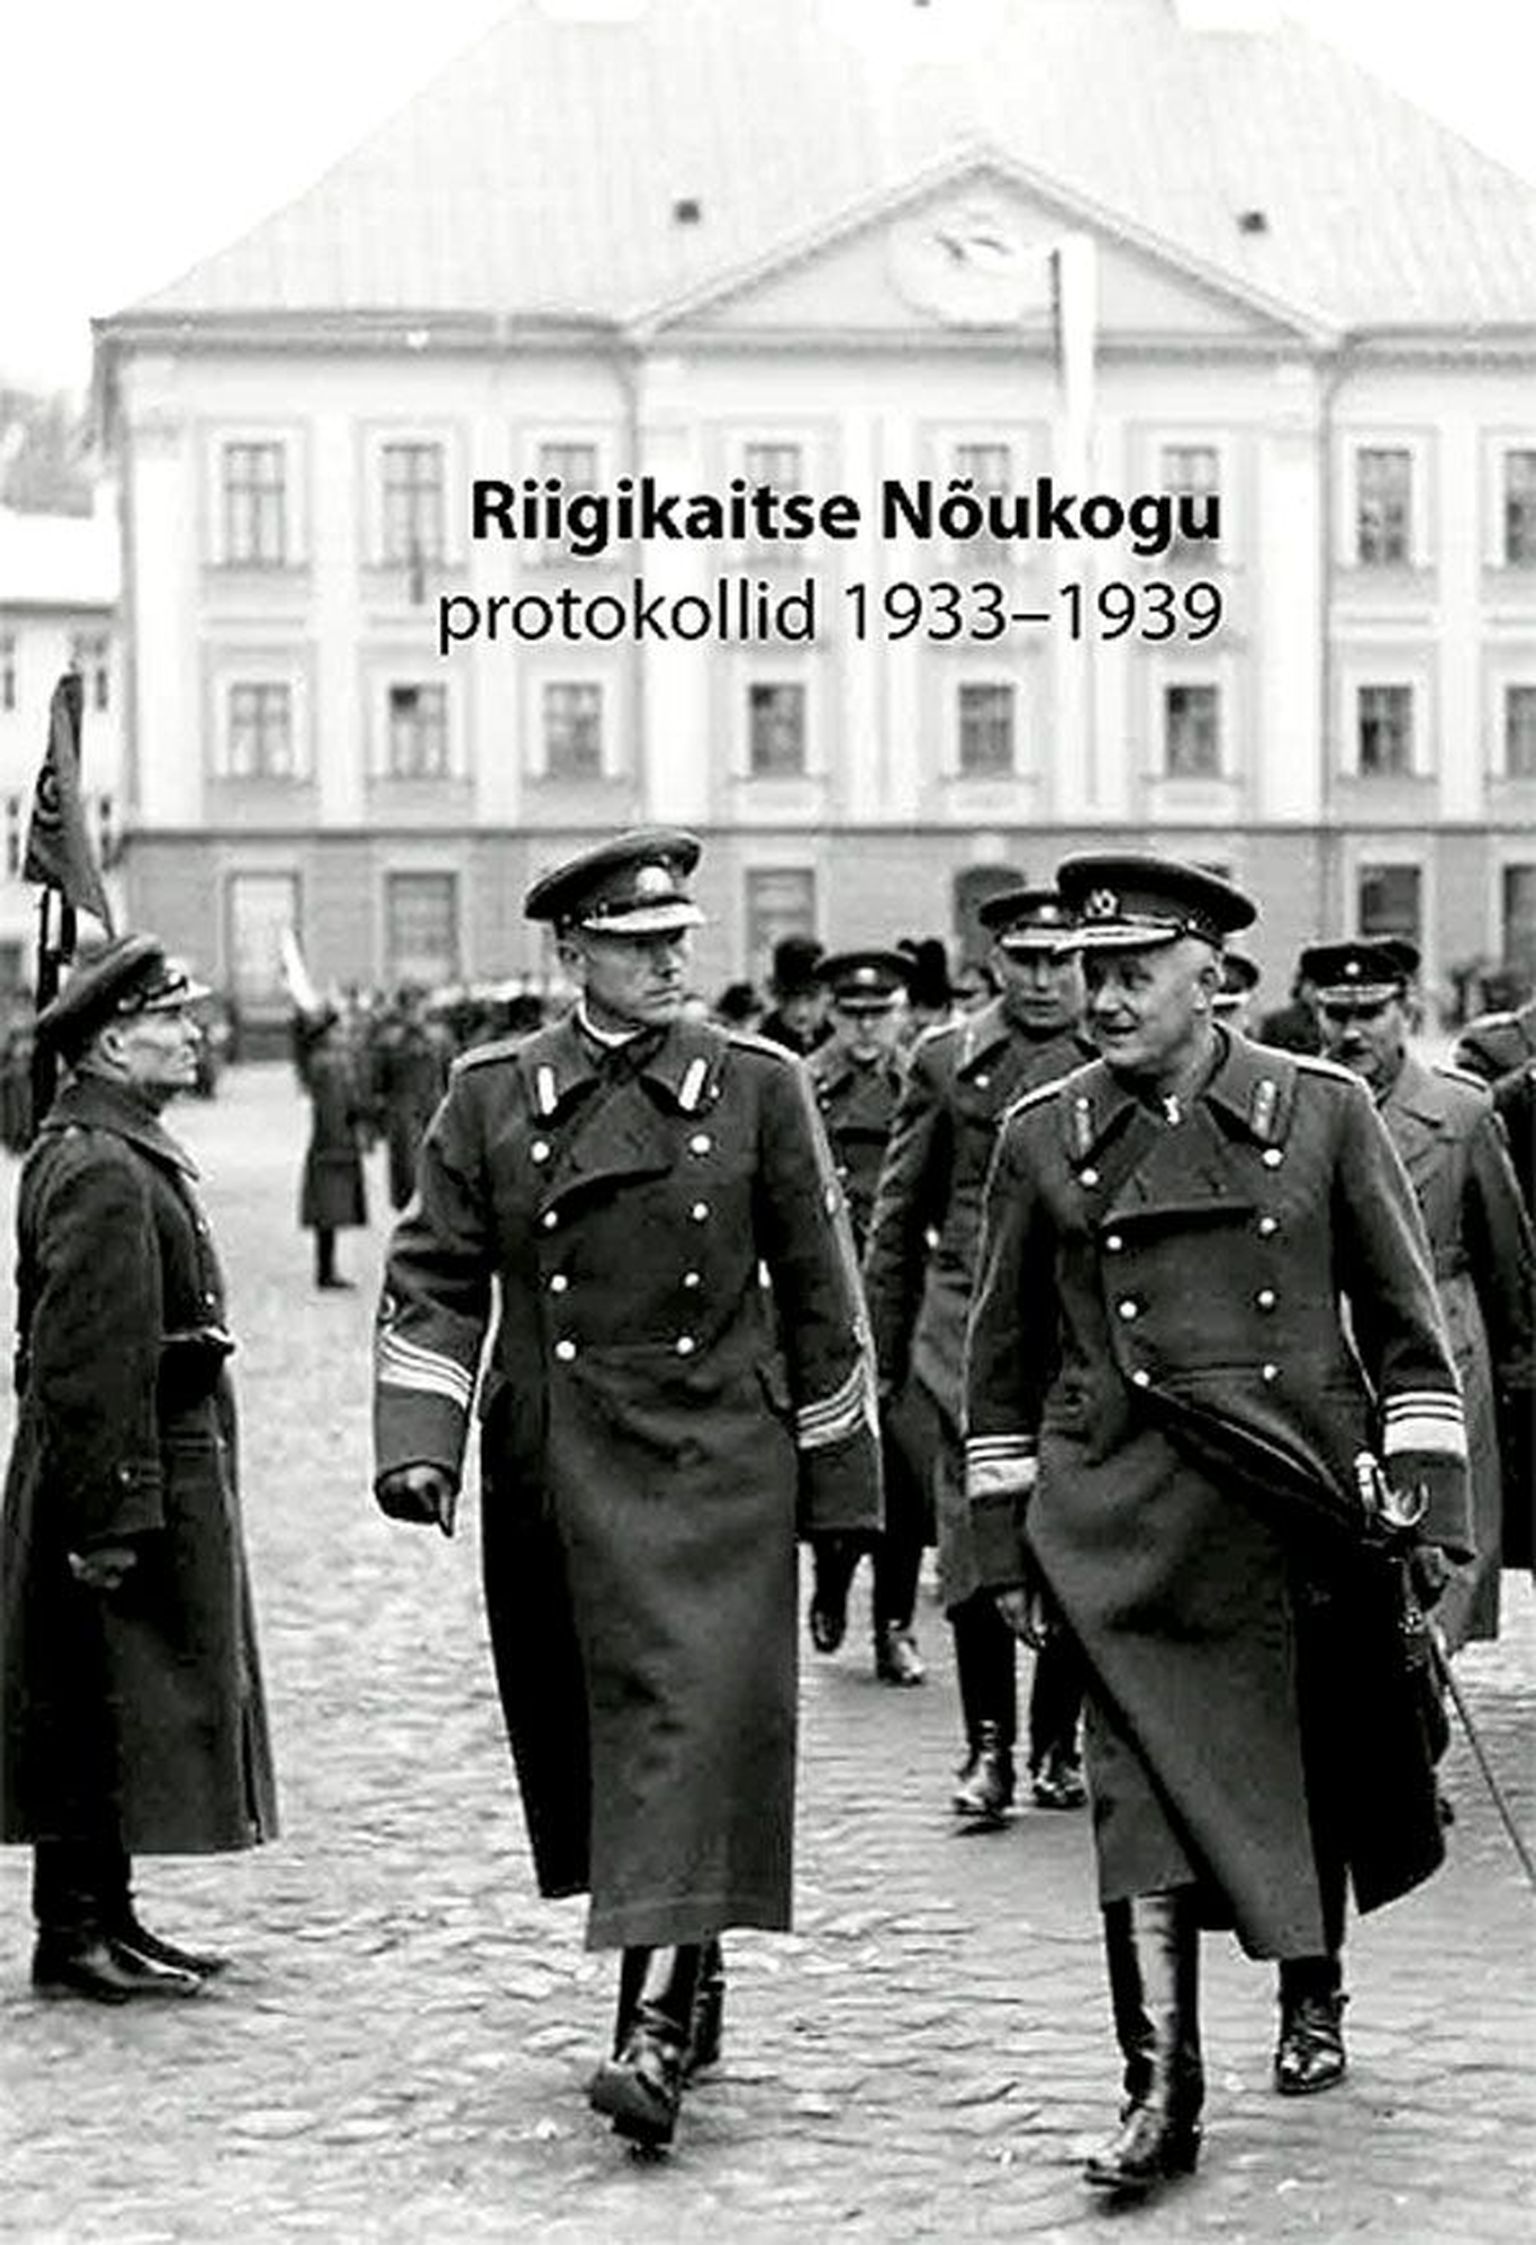 «Riigikaitse Nõukogu protokollid 1933–1939», koostanud Urmas Salo, Eesti ajalooarhiiv, 
Tartu, 2013, 
583 lk.